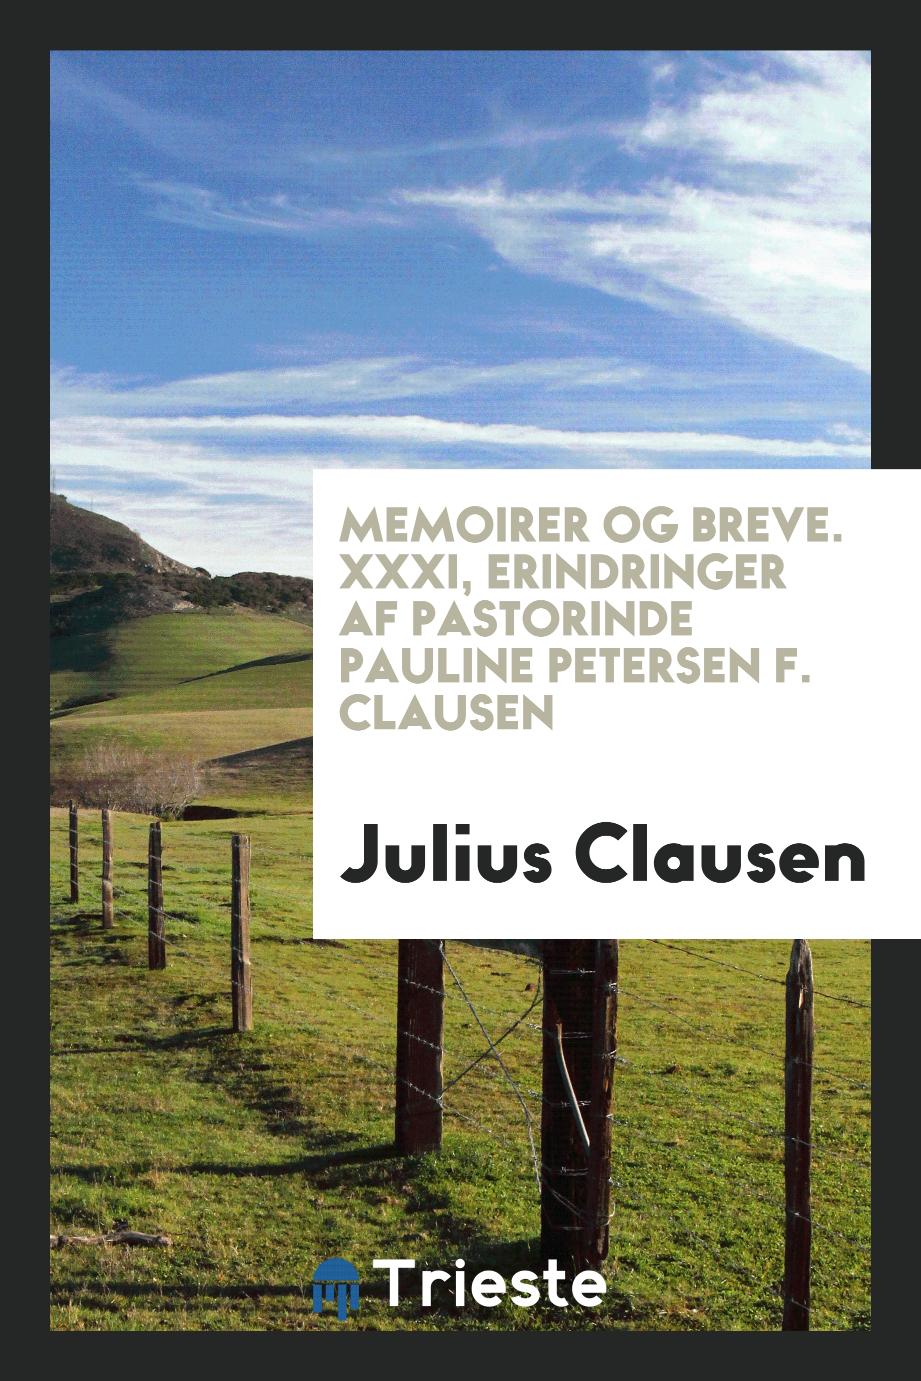 Memoirer og breve. XXXI, Erindringer af pastorinde Pauline Petersen f. Clausen